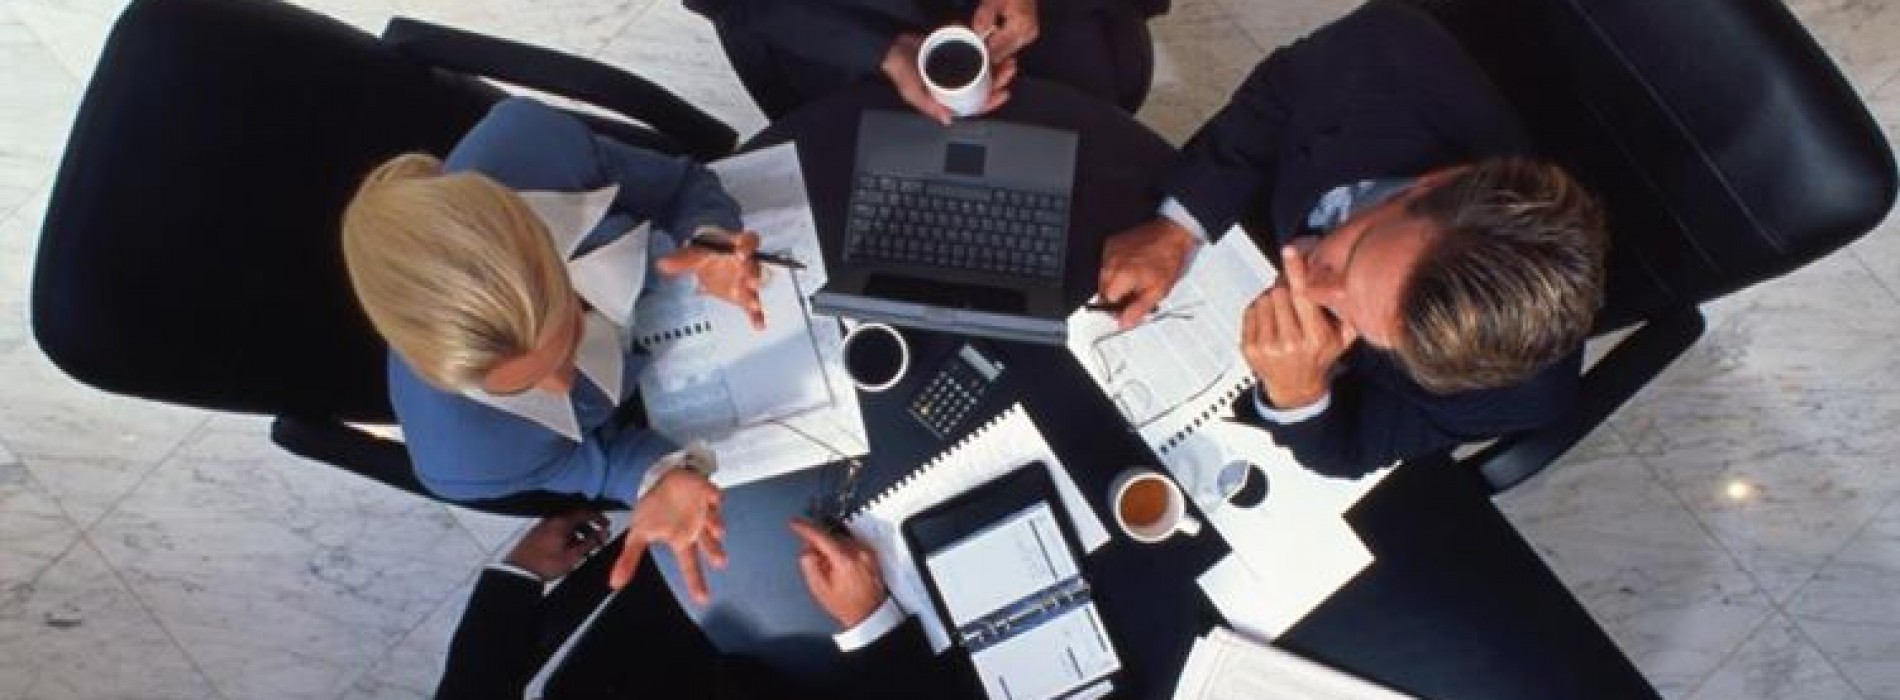 Po co organizuje się spotkania biznesowe?